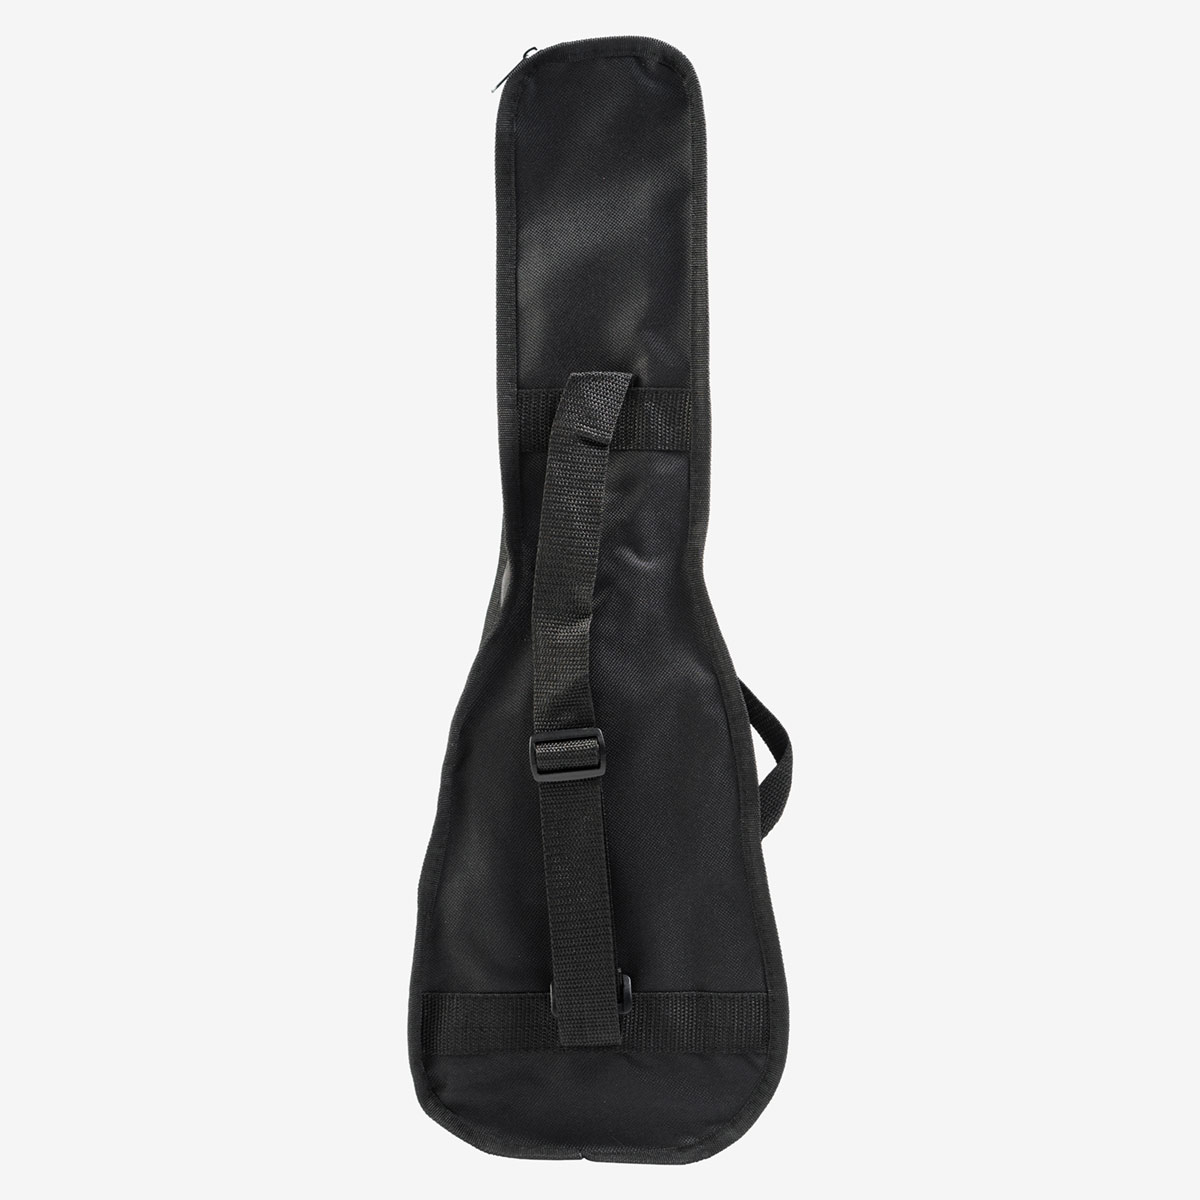 Fender x Hard Rock Venice Ukulele in Satin Black with Bag image number 5